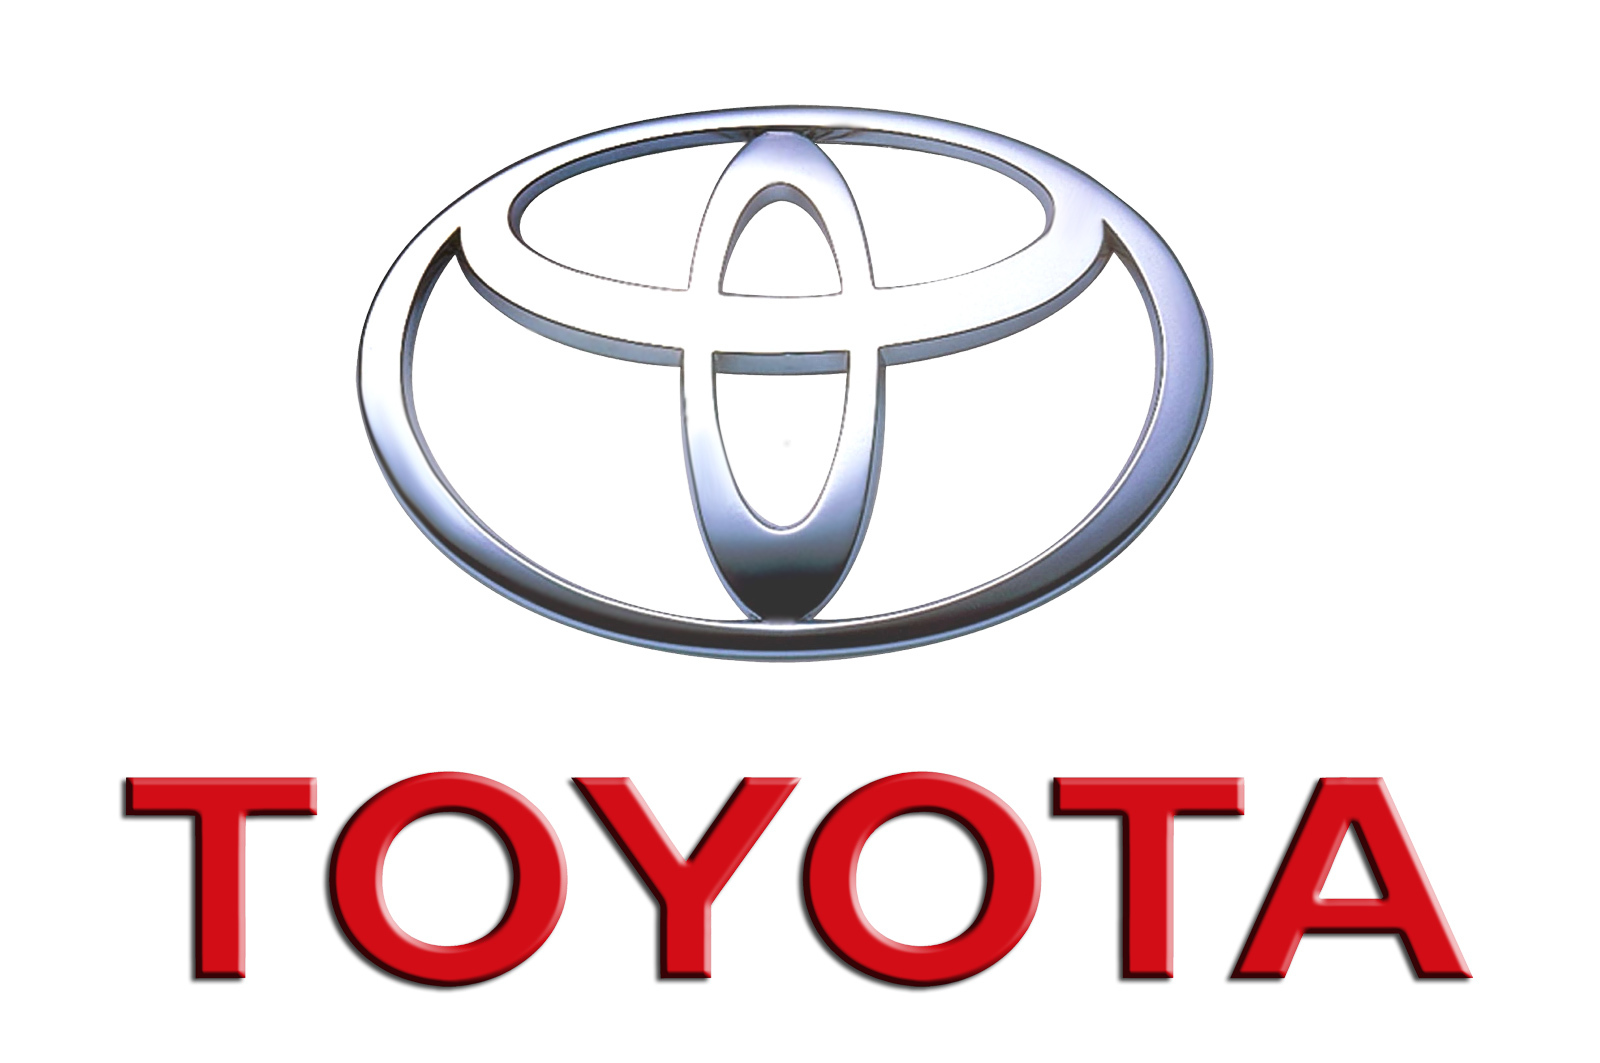 Η Toyota ανακαλεί 2,27 εκατομμύρια αυτοκίνητα παγκοσμίως λόγω προβλήματος στον αερόσακο